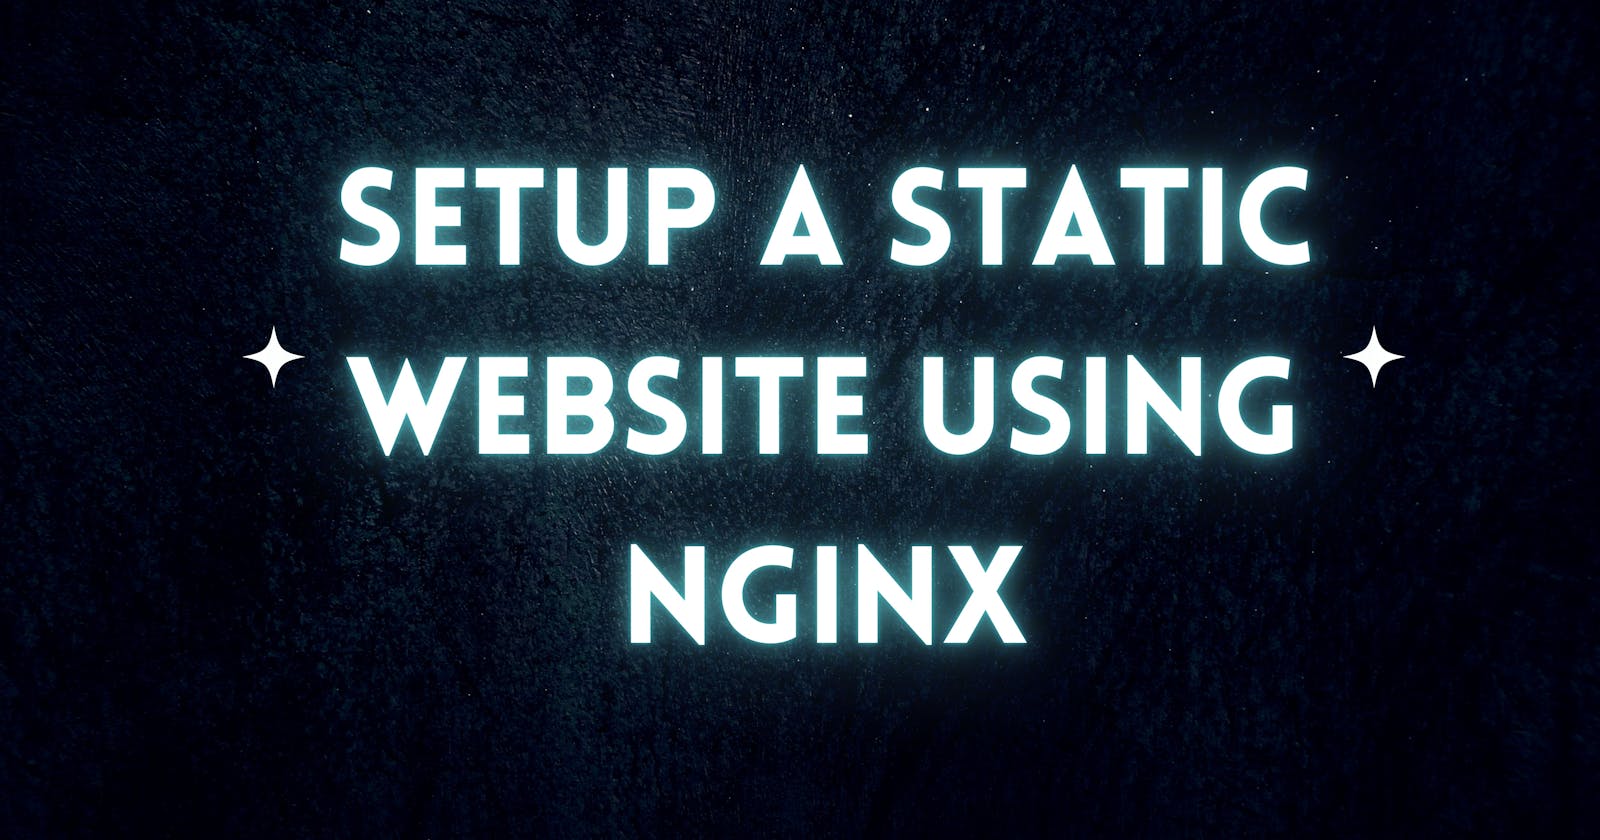 Setup a Static Website Using Nginx